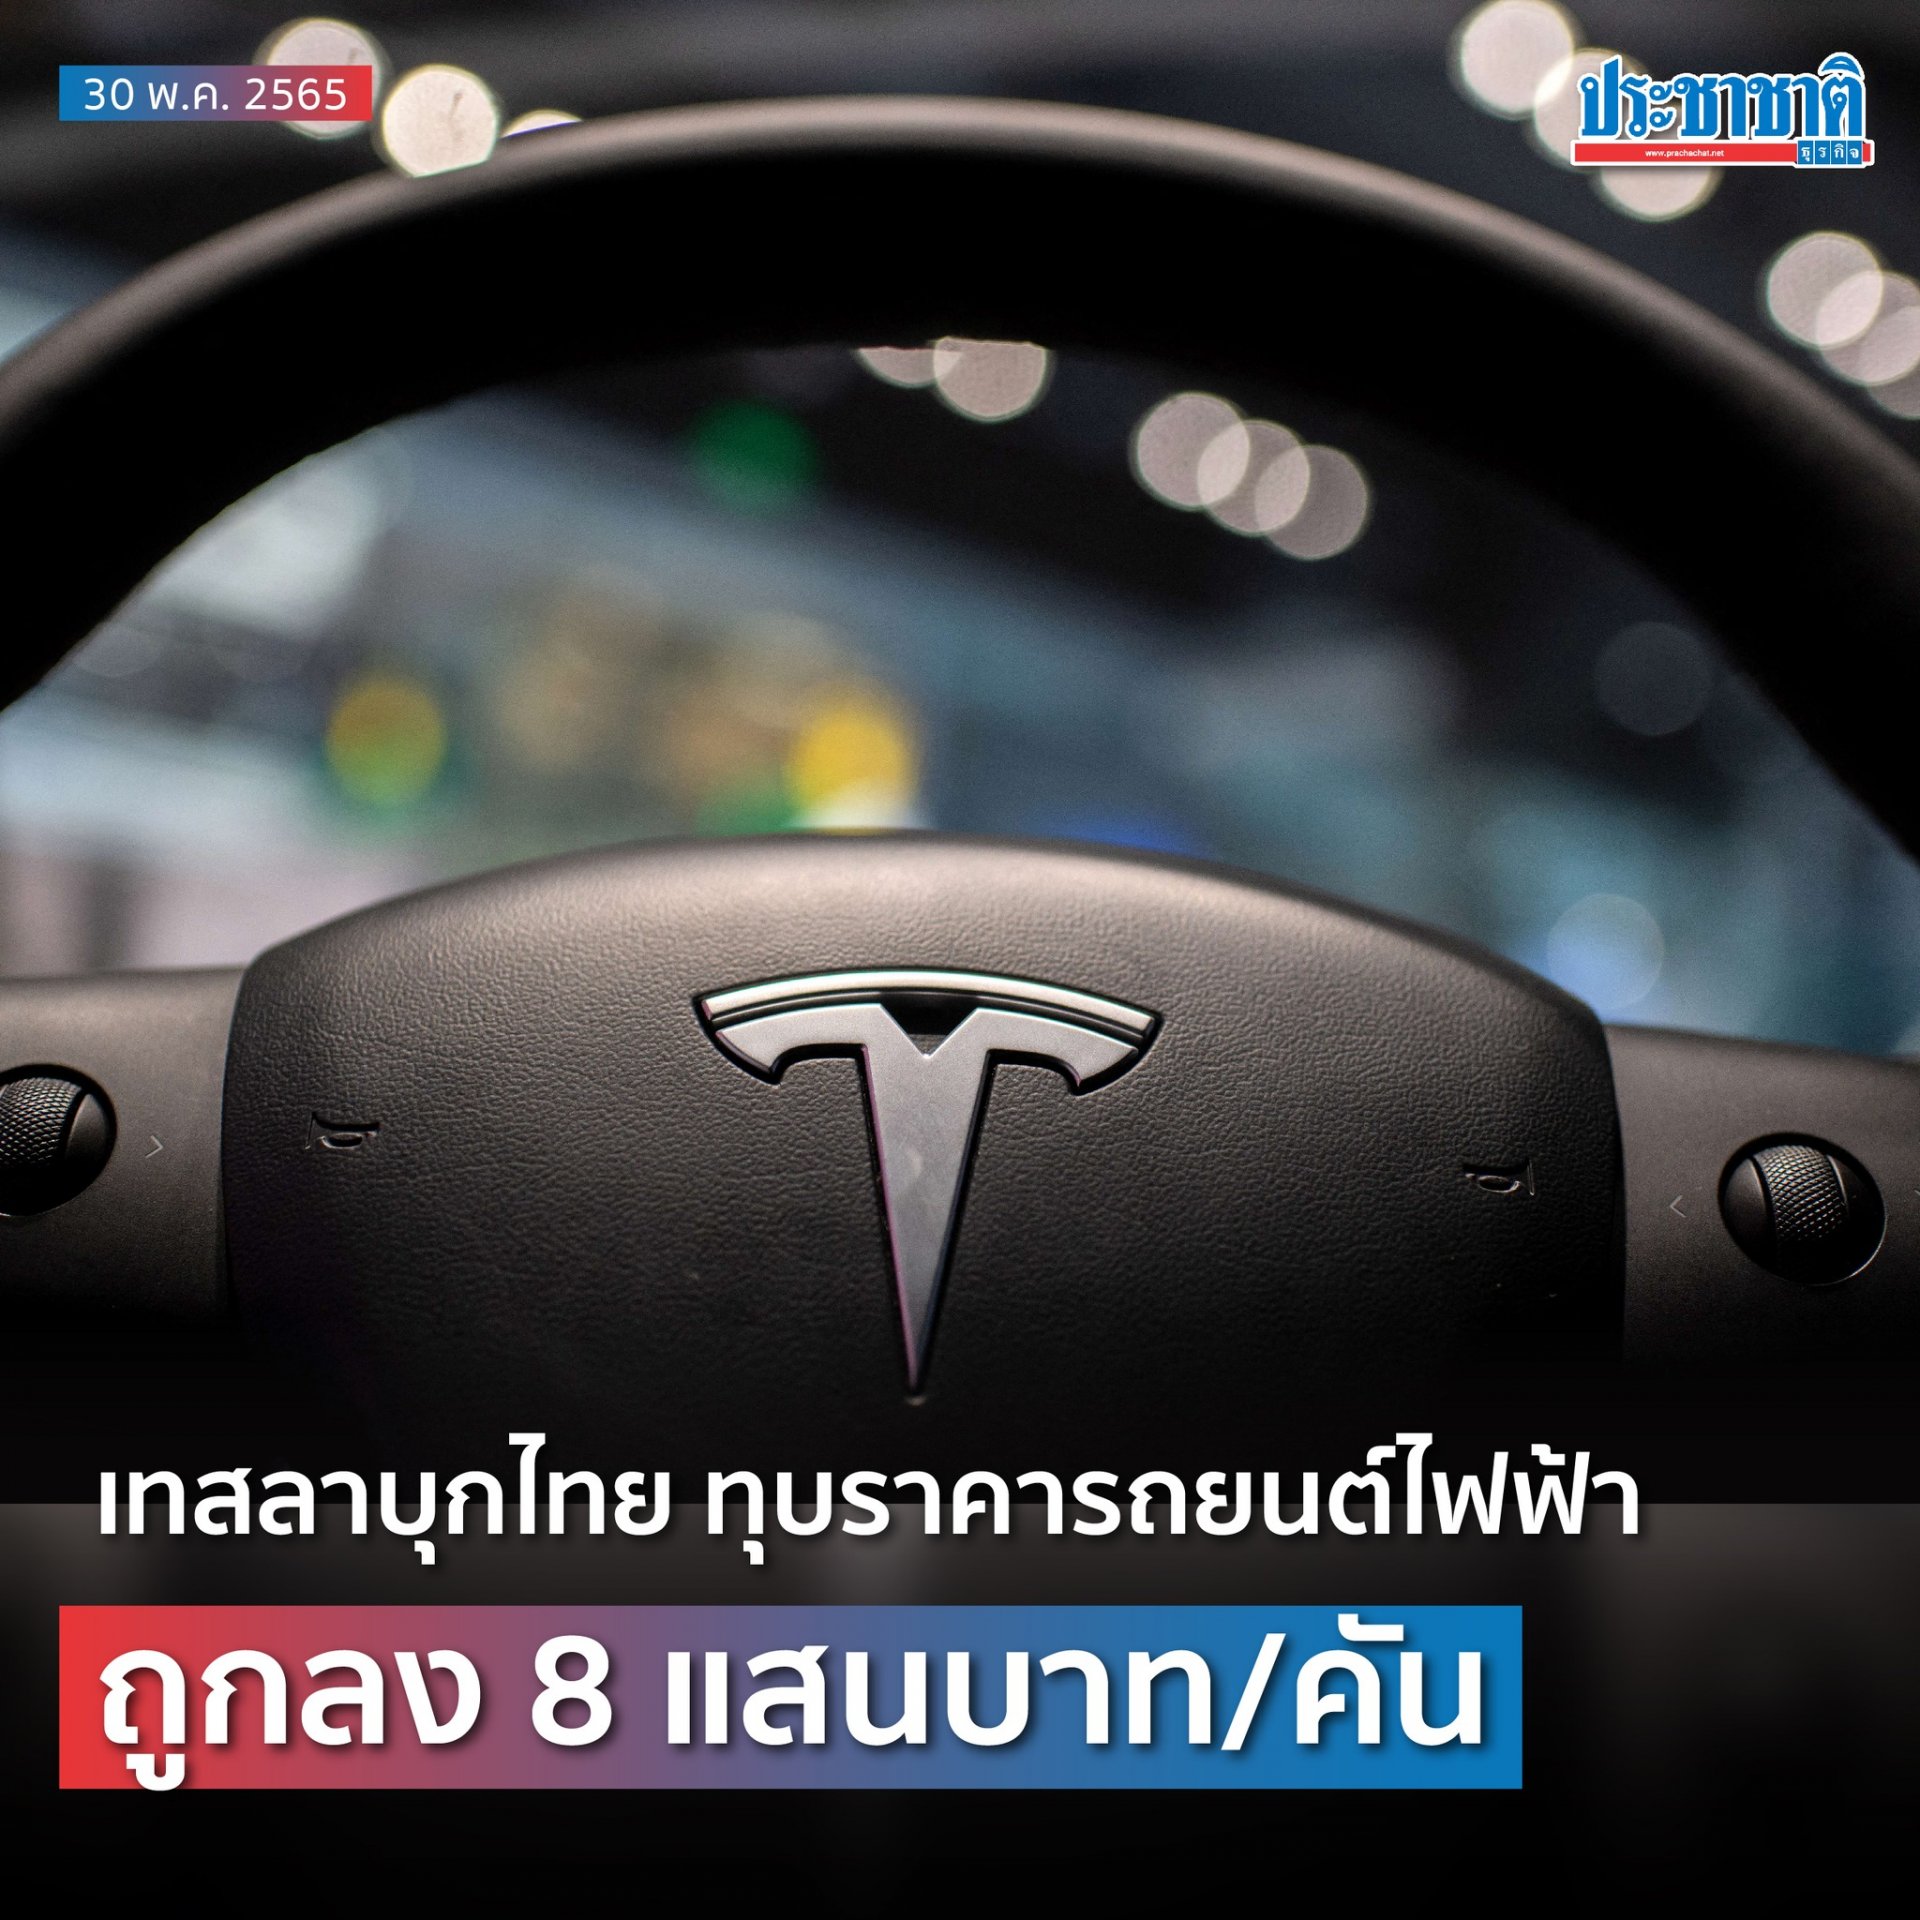 Headline: เทสลาบุกไทย ทุบราคารถยนต์ไฟฟ้า ถูกลง 8 แสนบาท/คัน